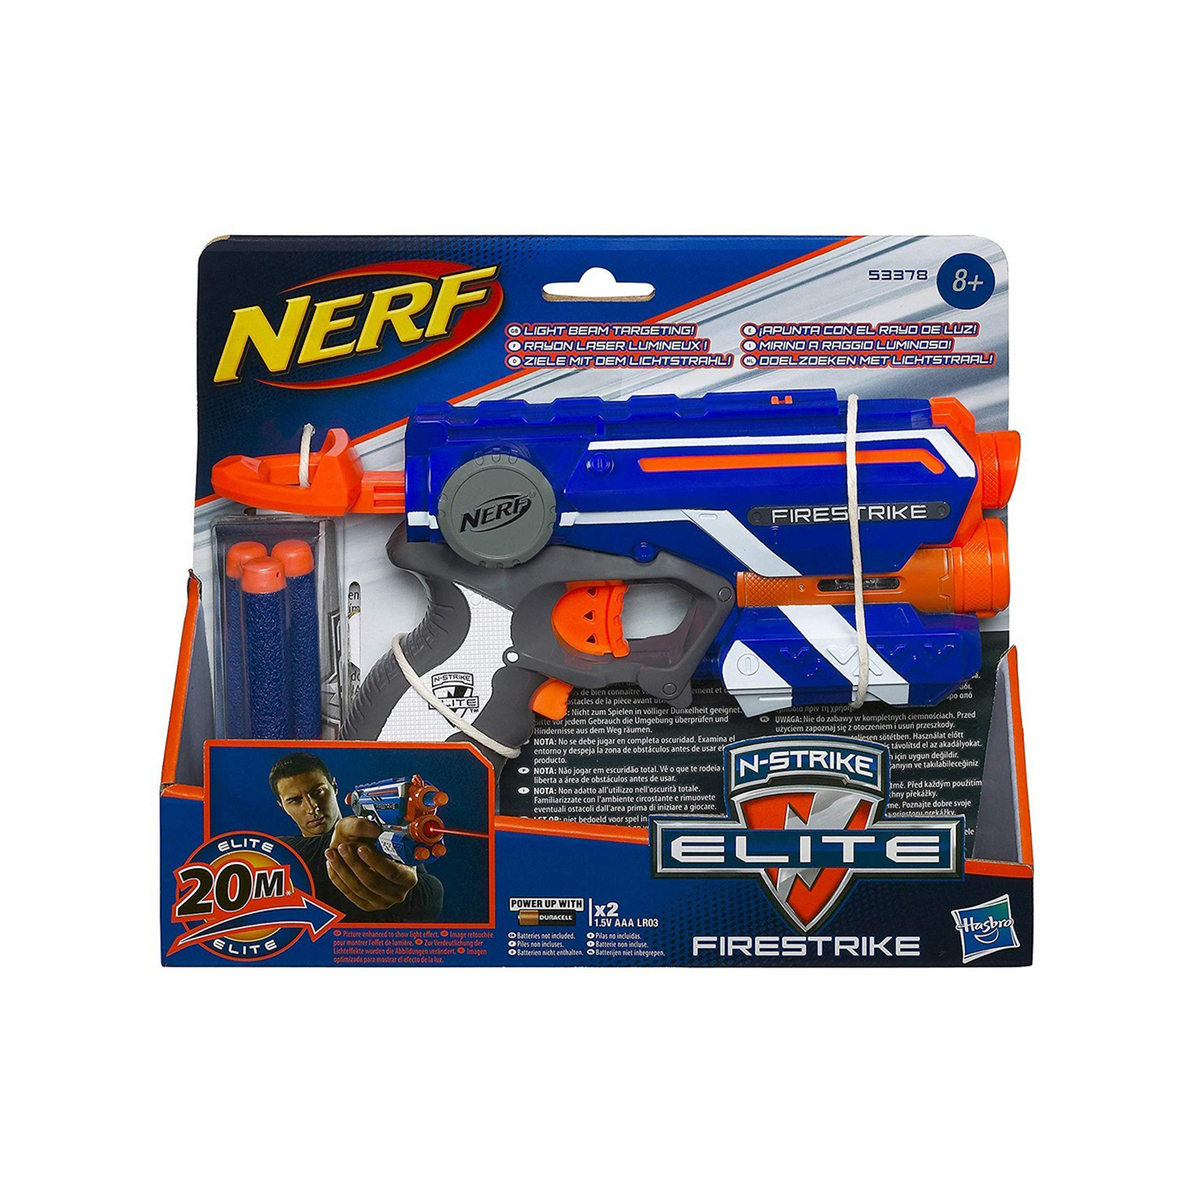 Nerf Elite Firestrike Blaster 53378